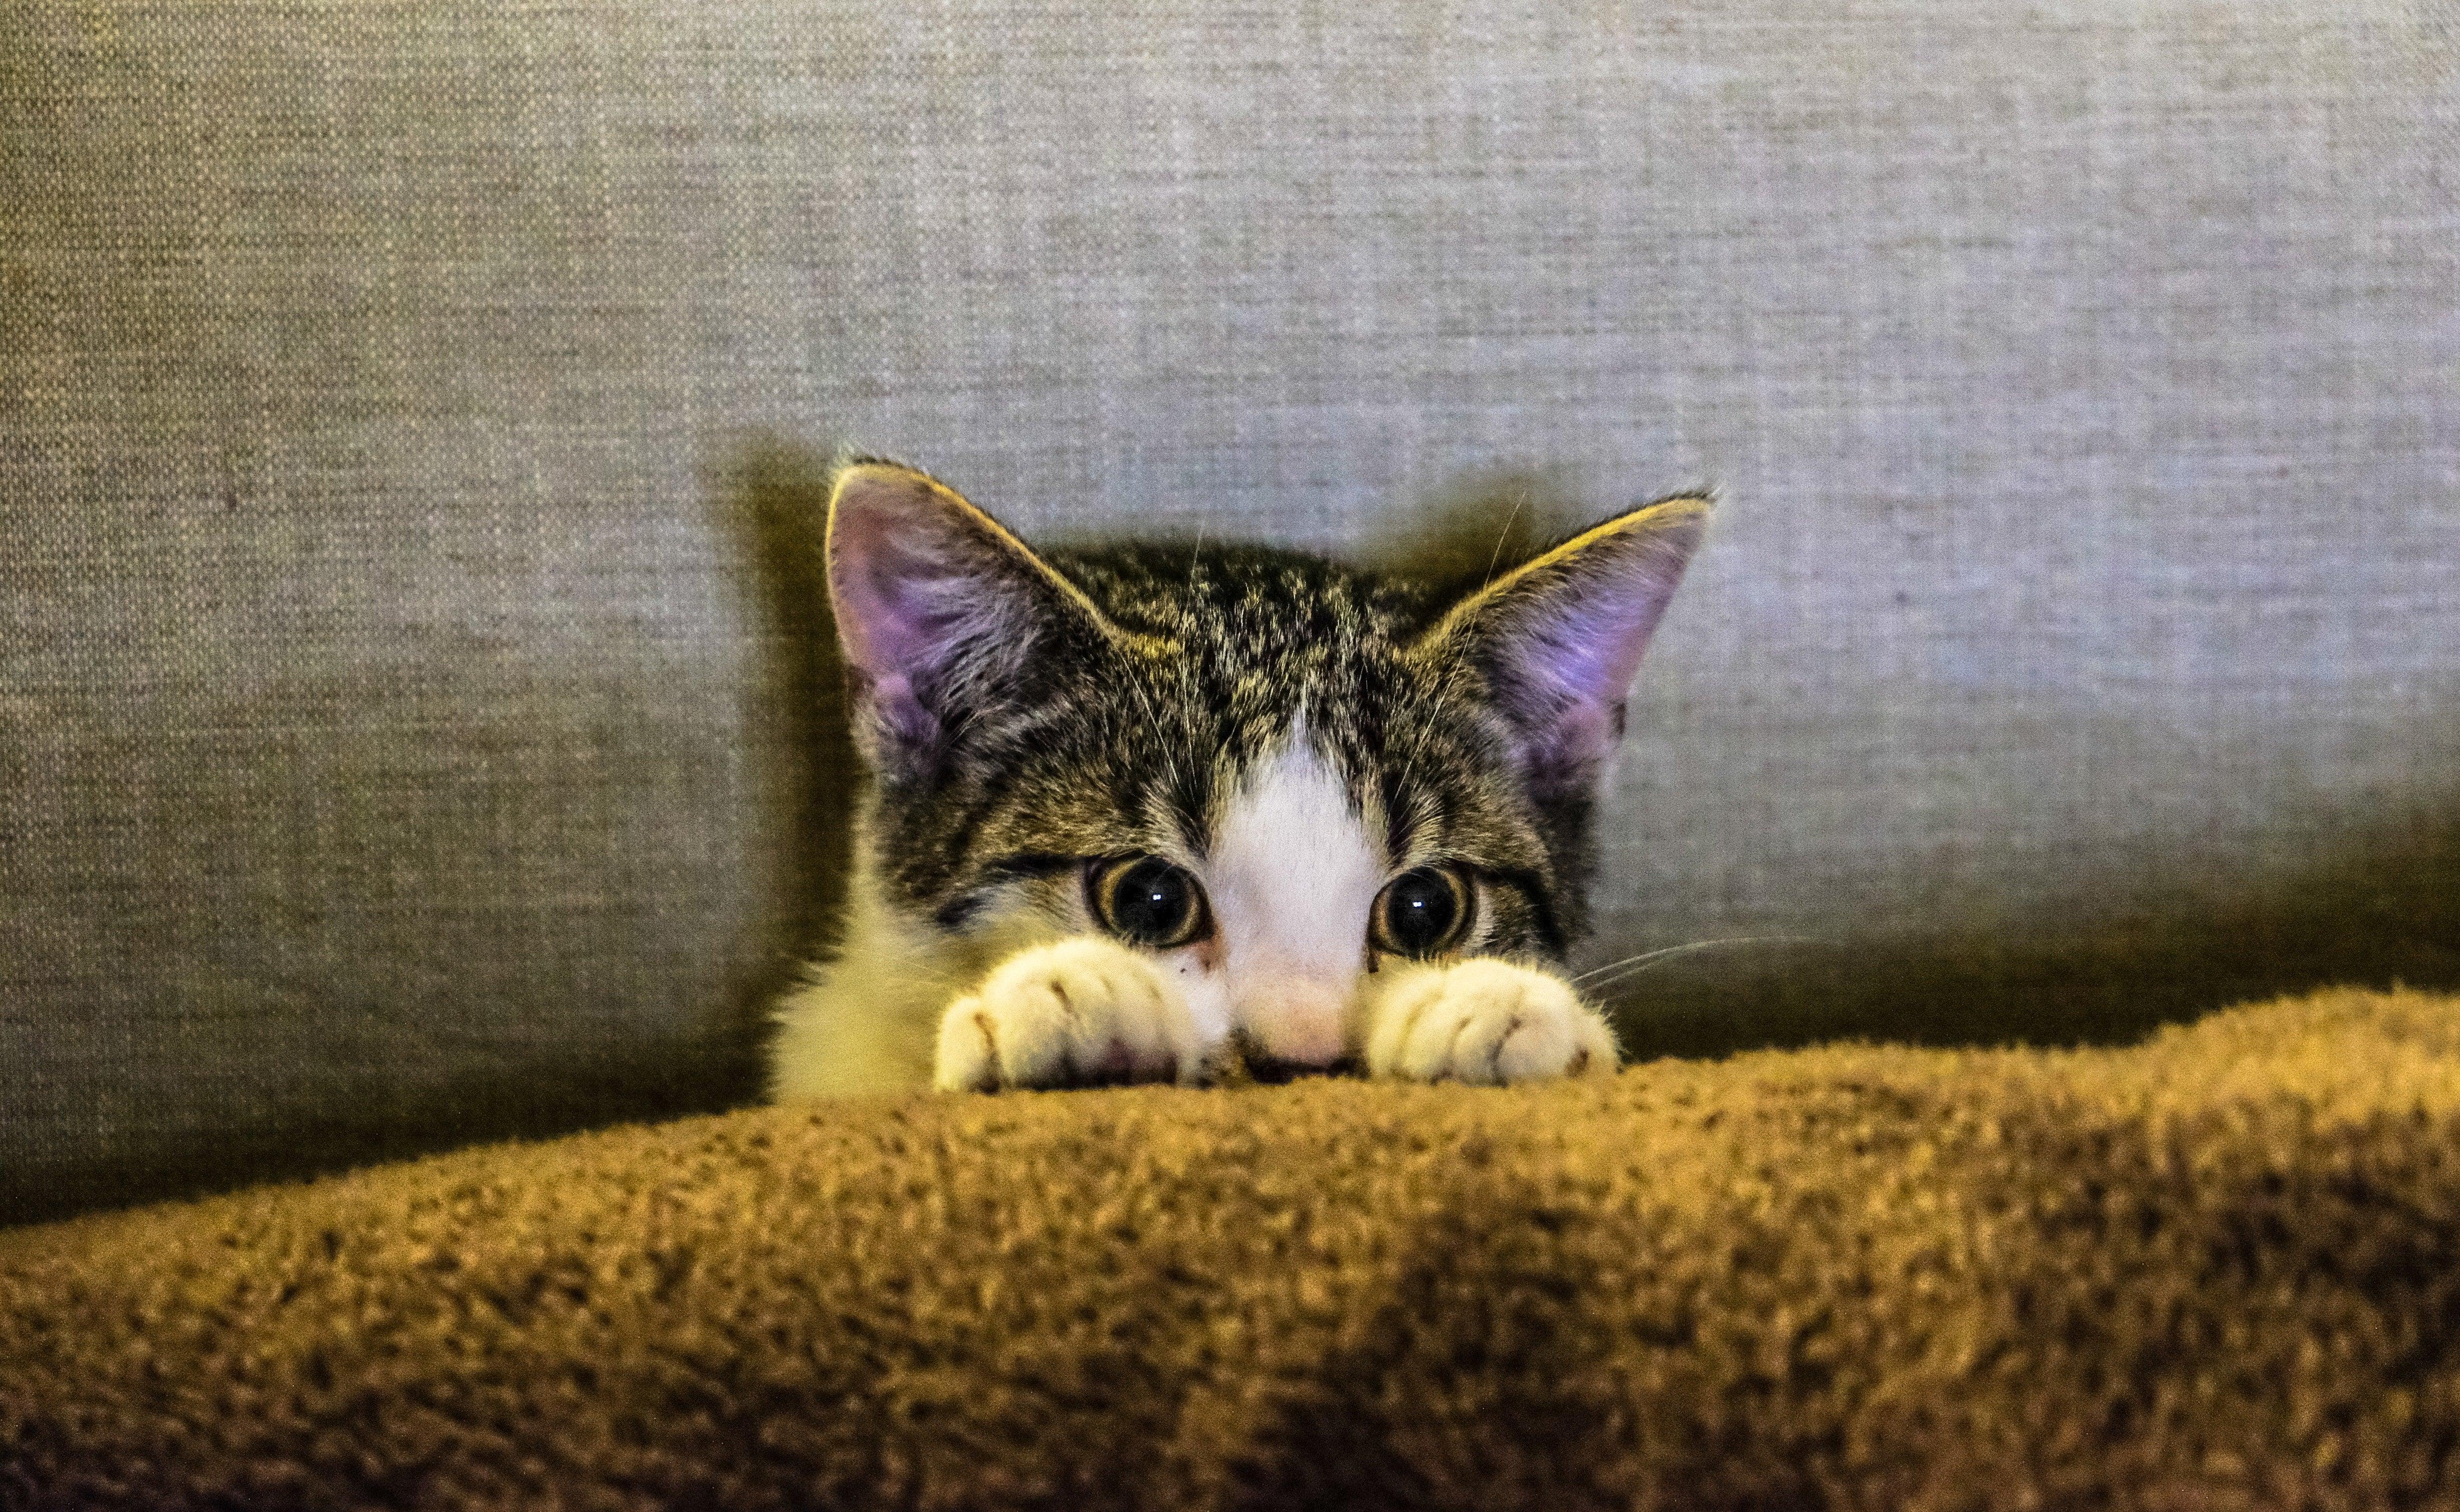 Hoe Maak ik Mijn Kitten Zindelijk? | Huisdierspullen.nl